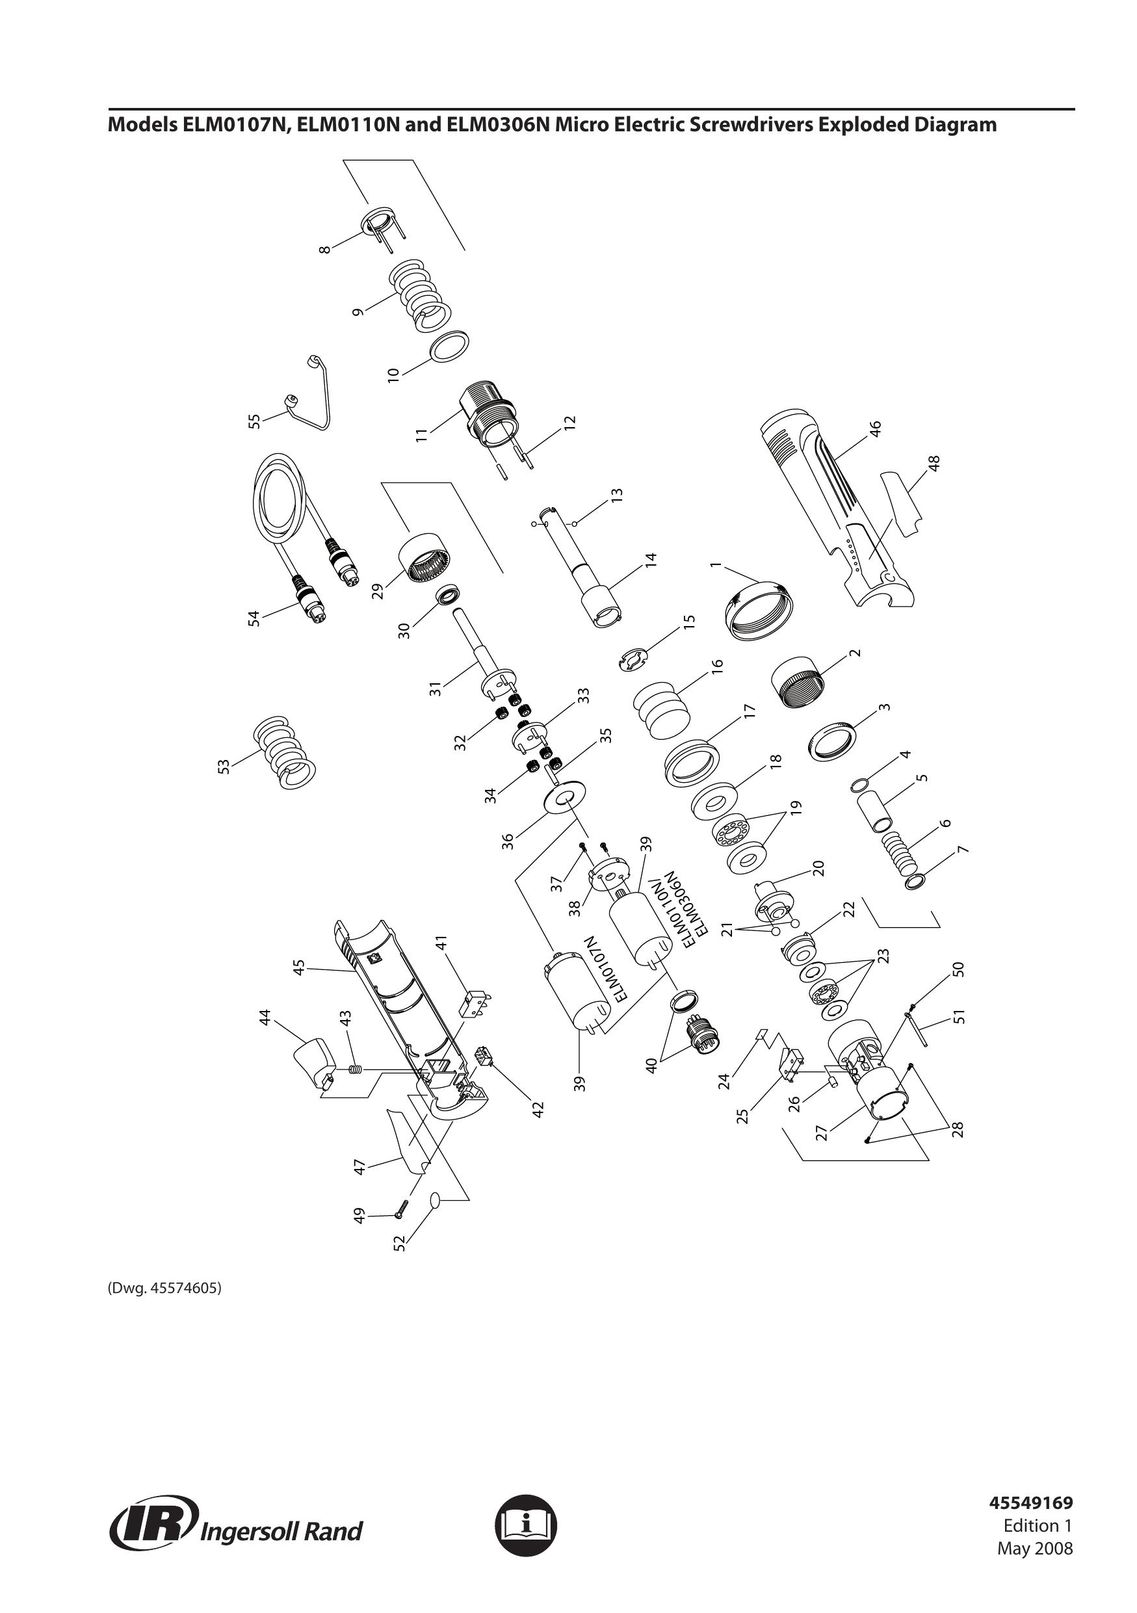 Ingersoll-Rand ELM0107N Power Screwdriver User Manual